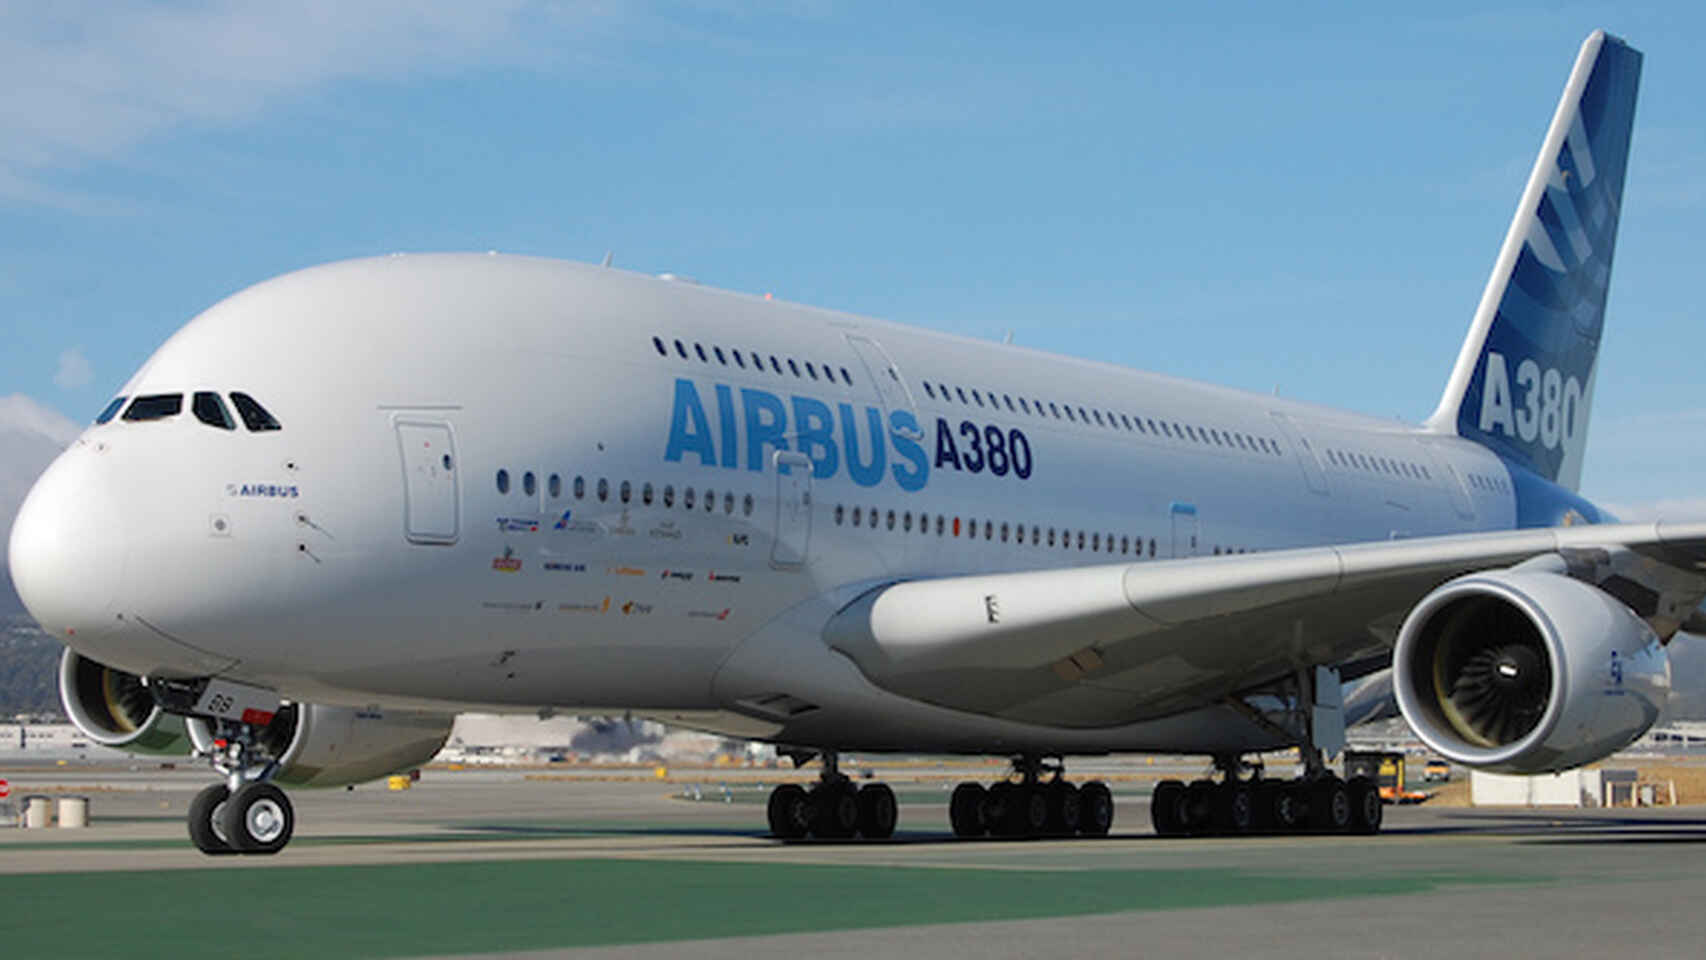 Airbus despega hacia un futuro de aviones cero emisiones gracias al hidrógeno